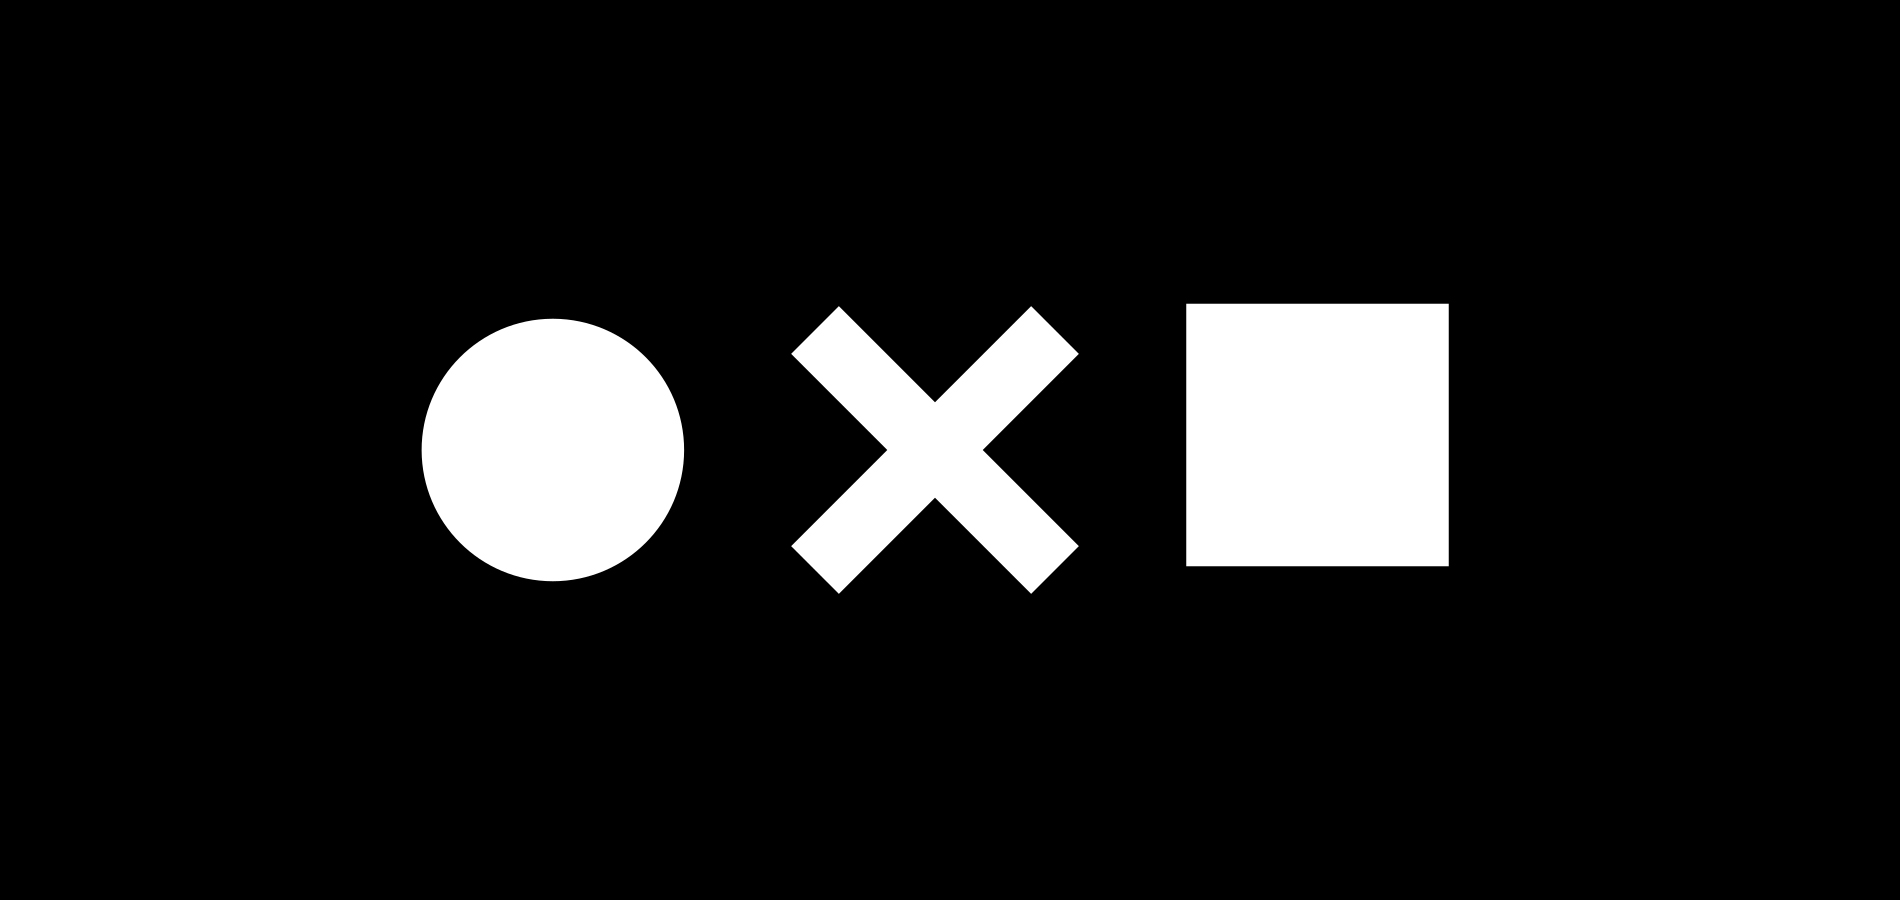 The Noun Project: банк бесплатных иконок